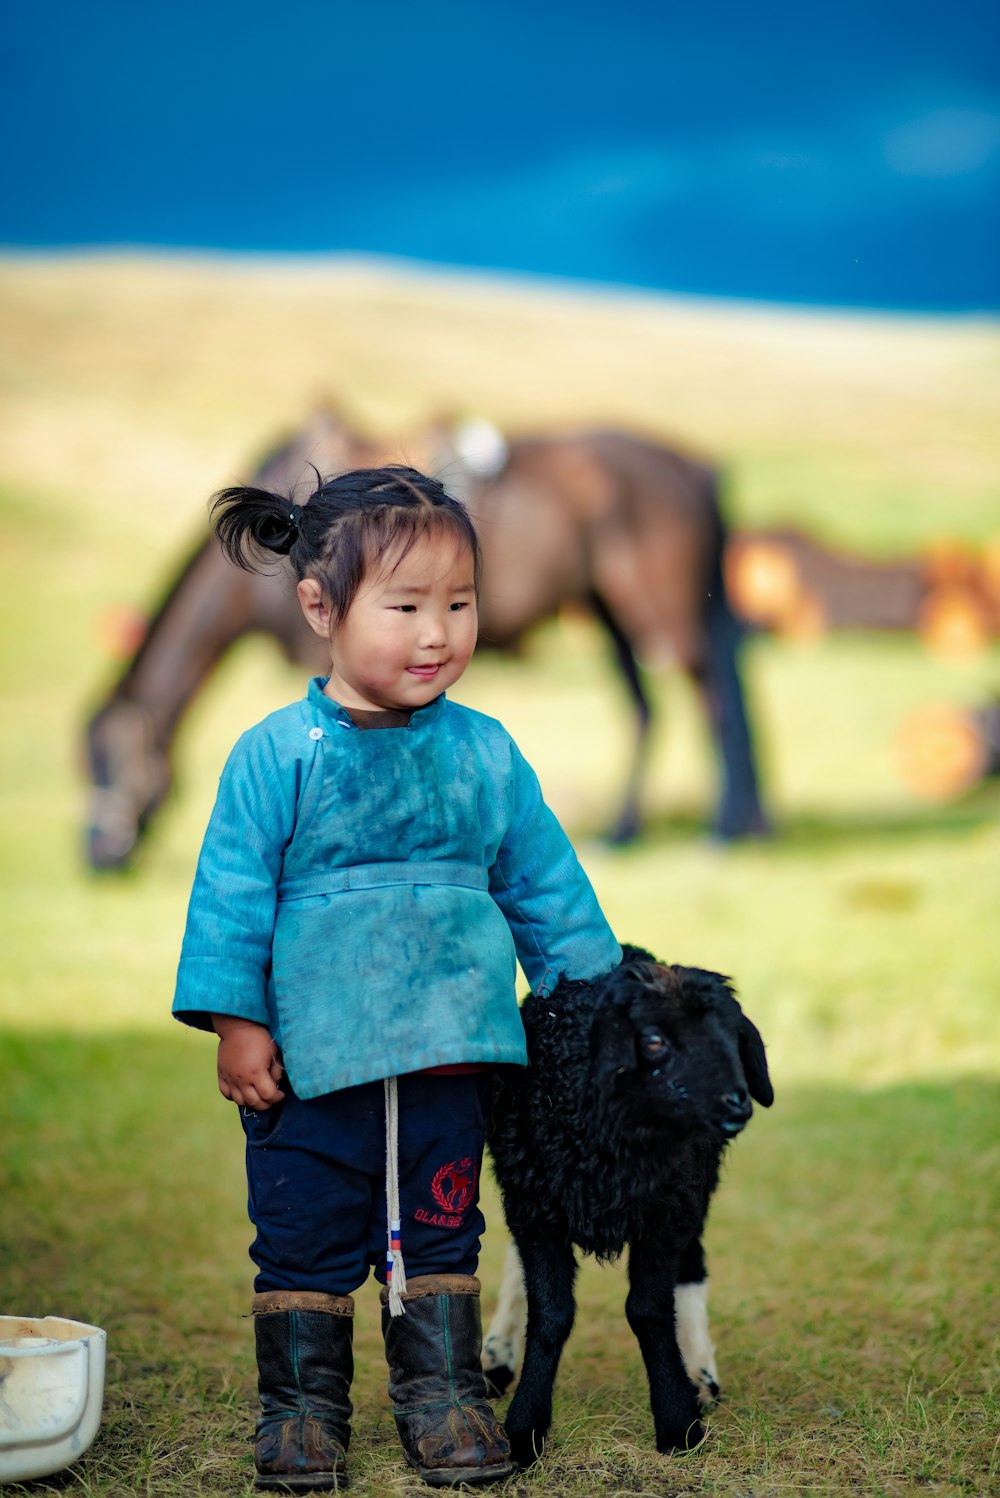 Una bambina in piedi accanto a un cane nero